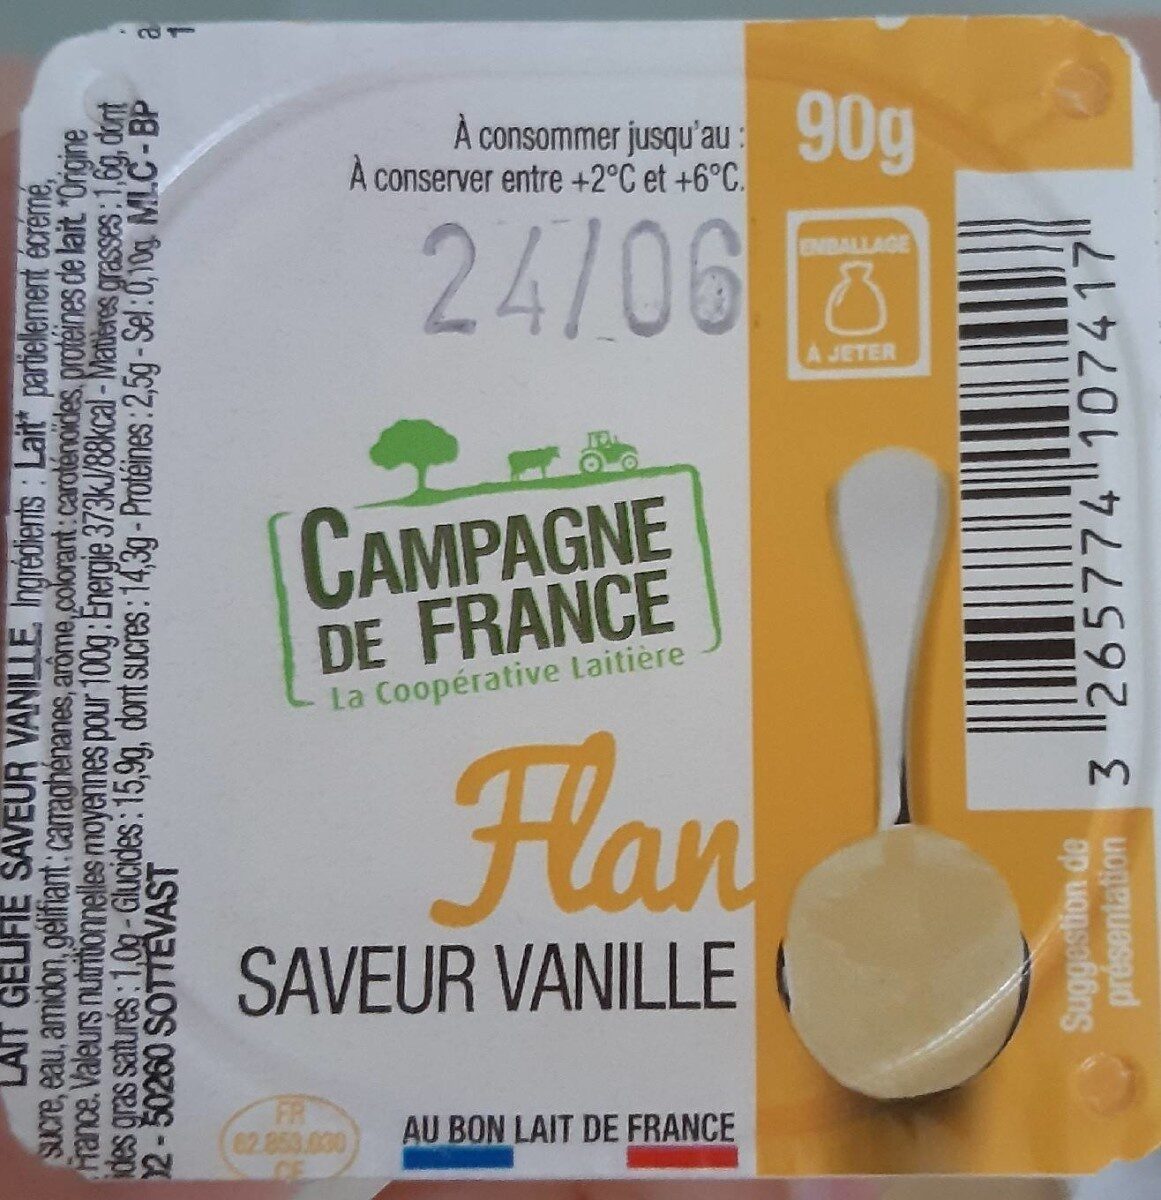 Flan, saveur vanille - Produkt - fr